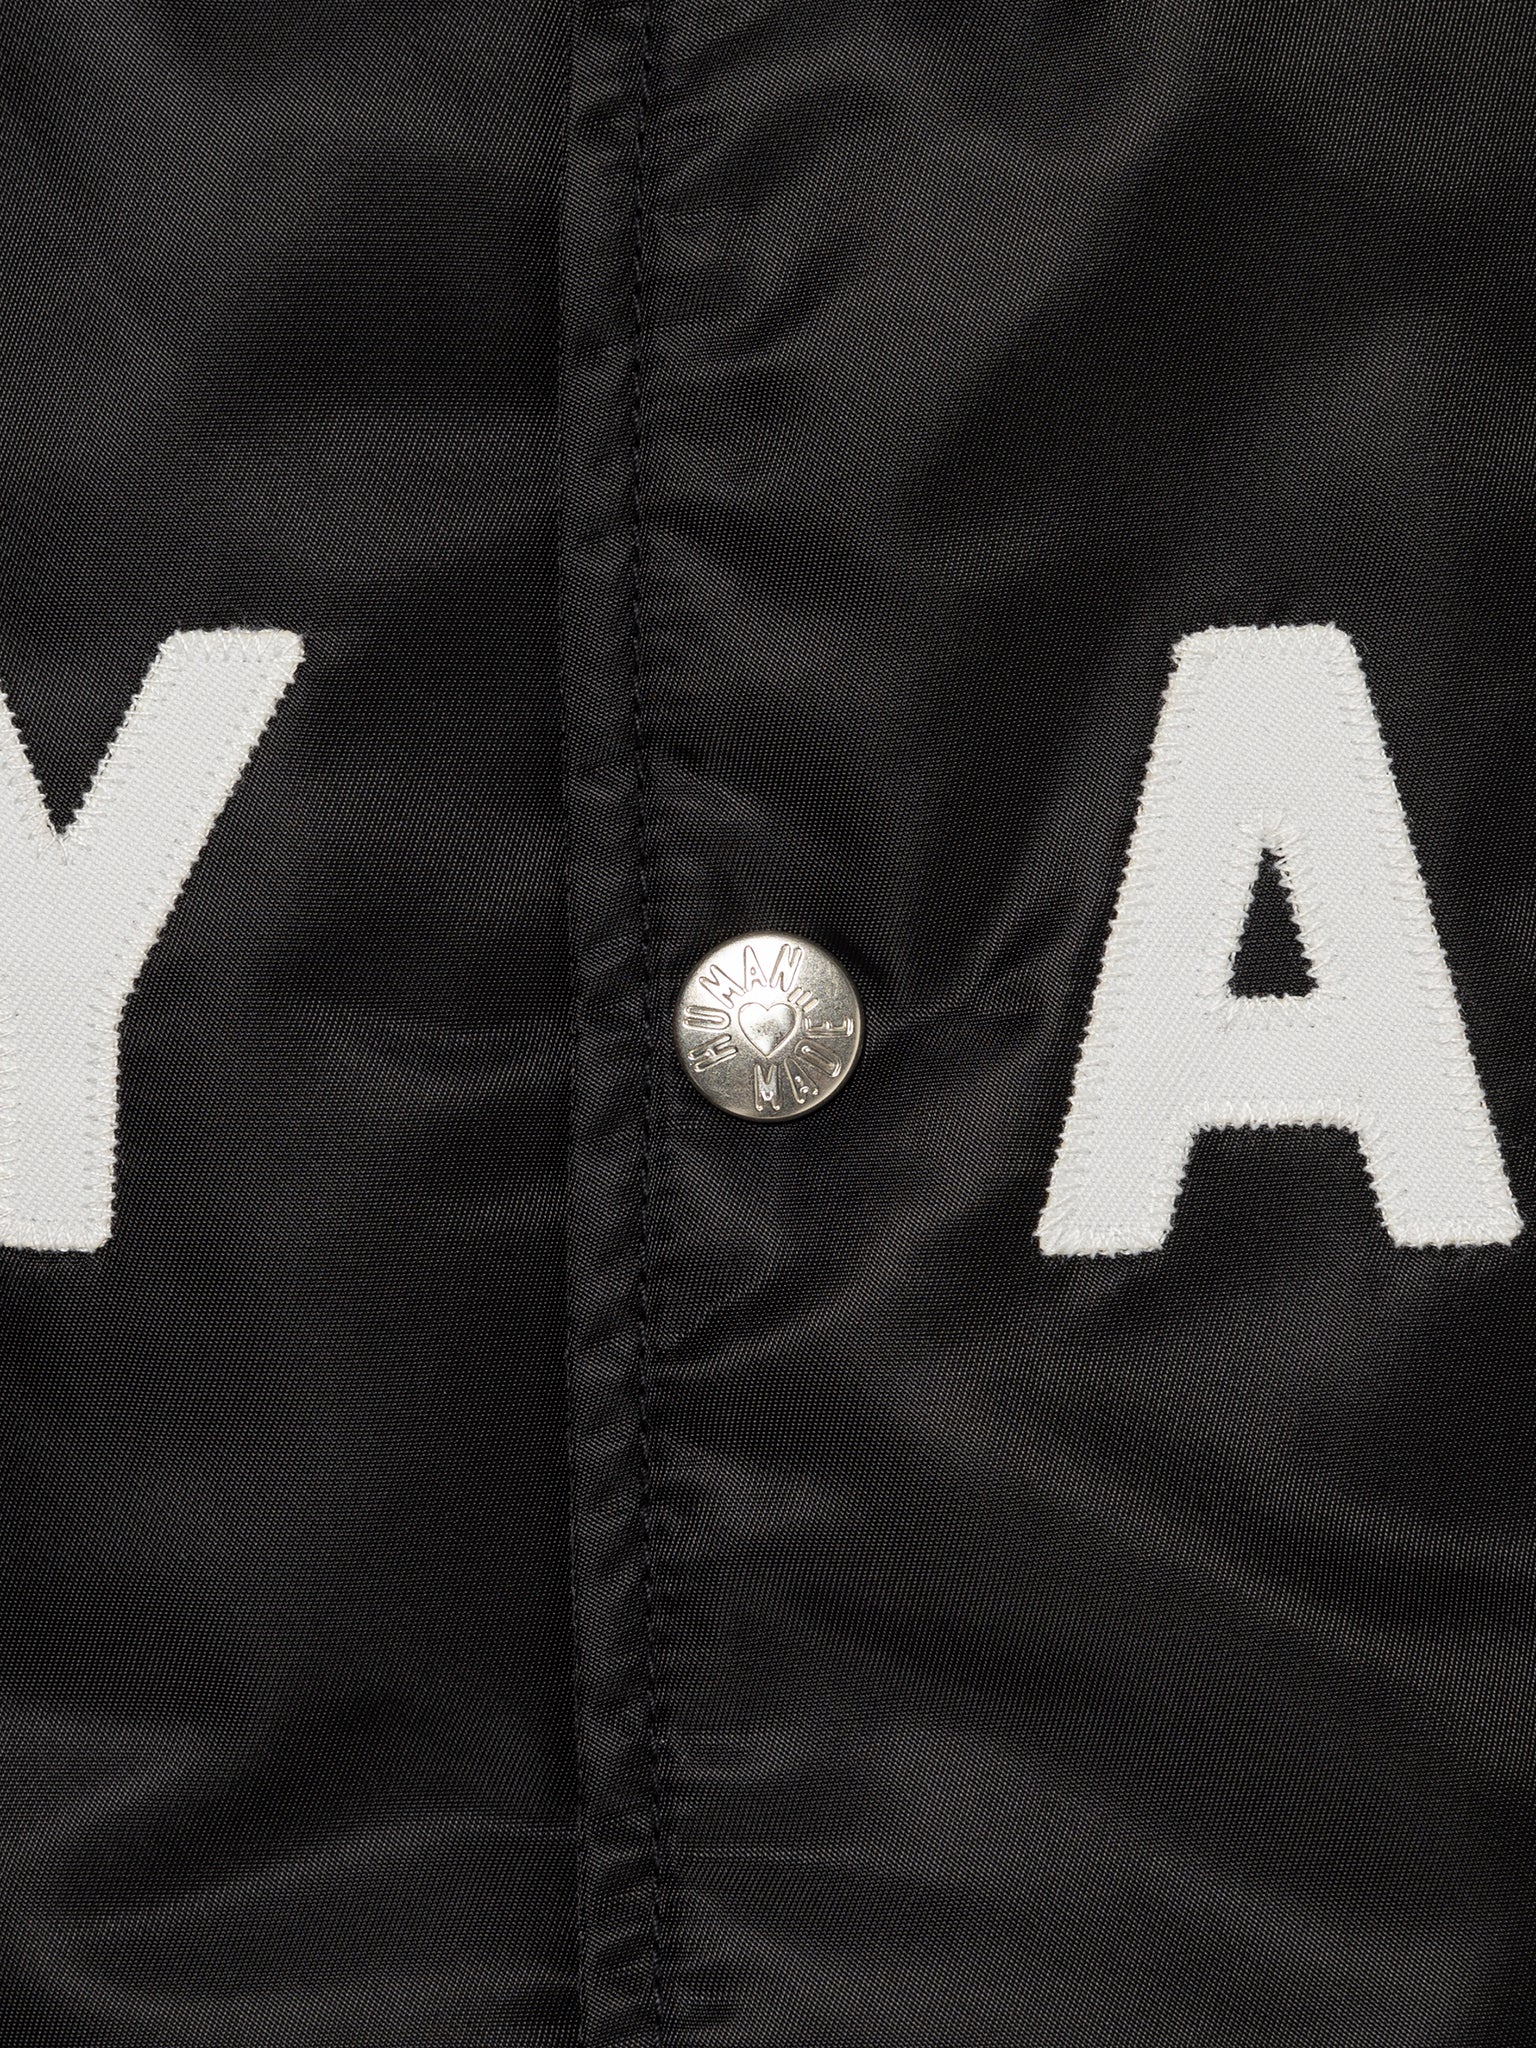 Human Made Nylon Stadium Jacket – OALLERY